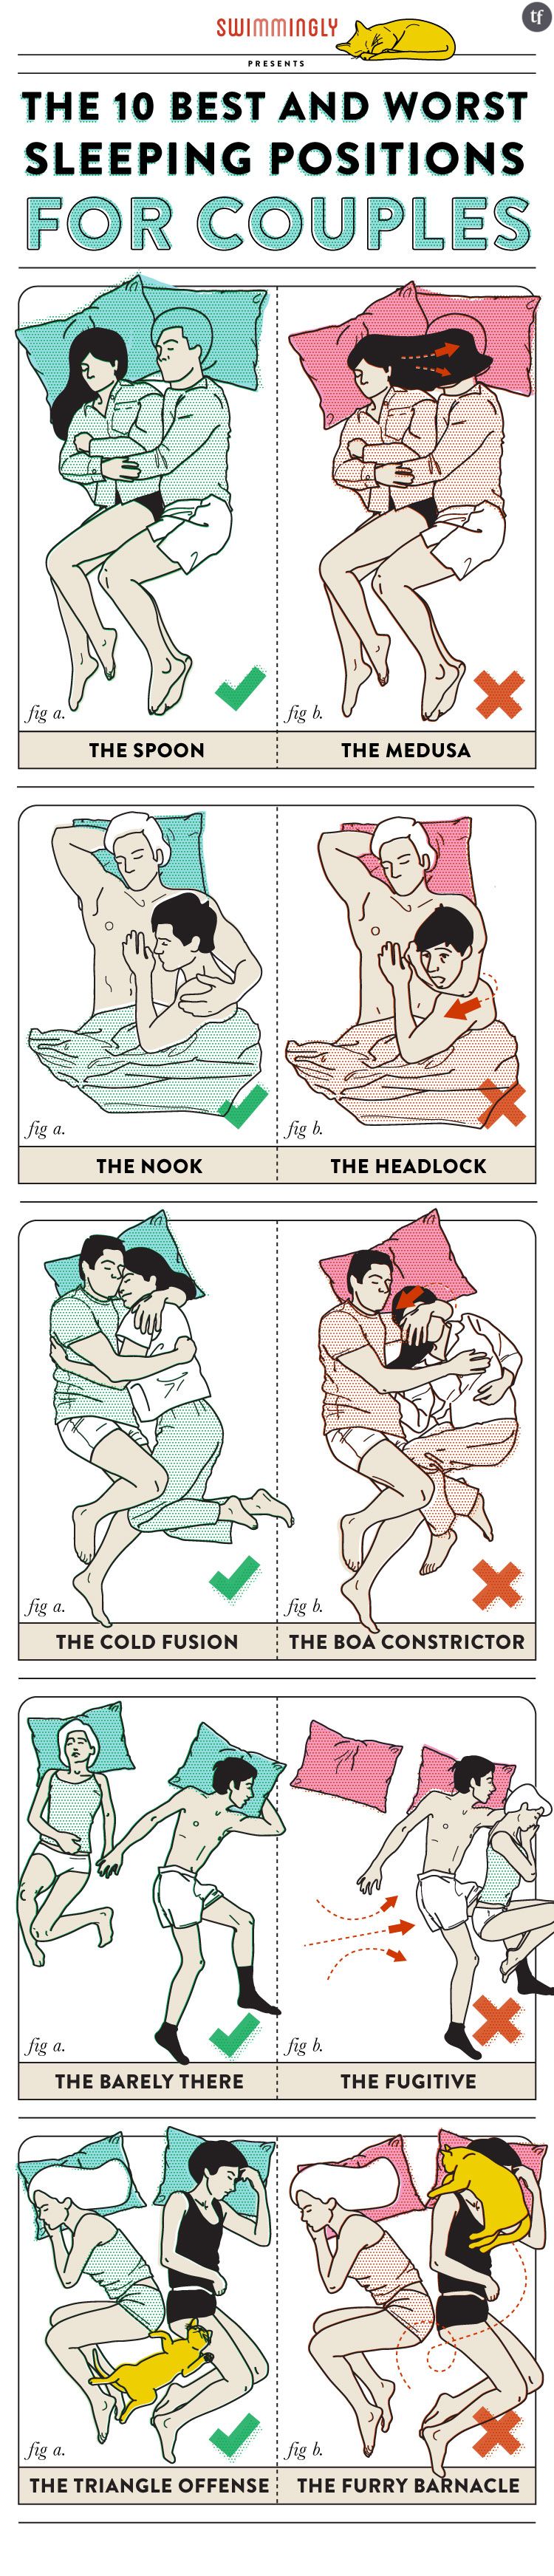 Les 10 meilleures et pires positions quand on dort en couple.